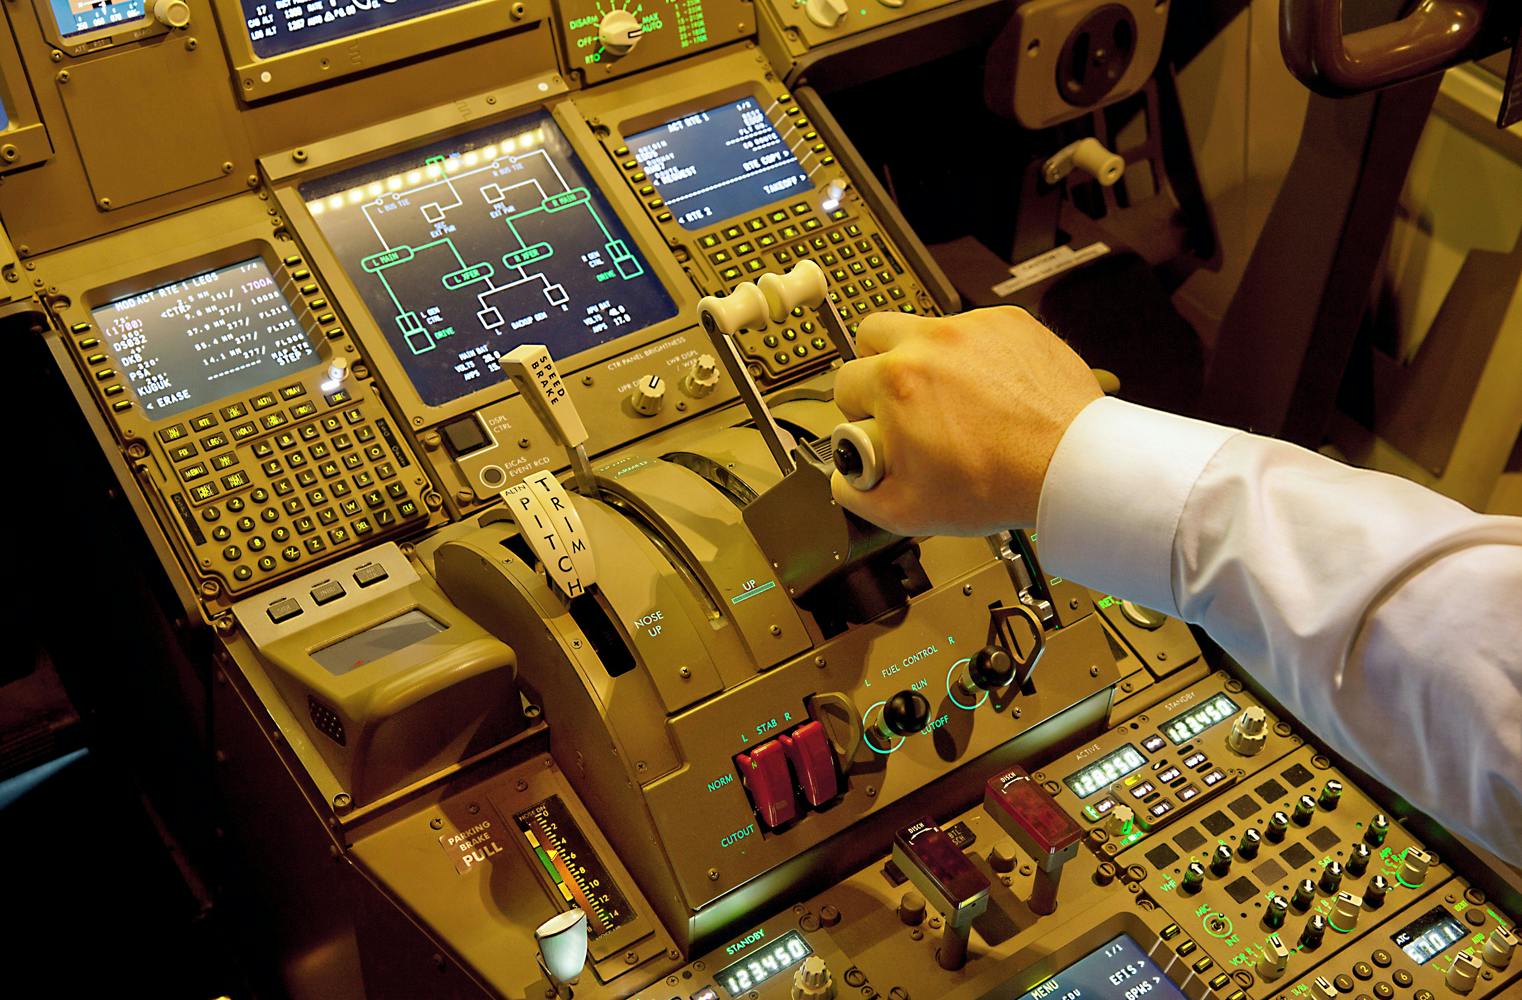 Als Captain in der Boeing 777 | Pilot im Flugsimulator